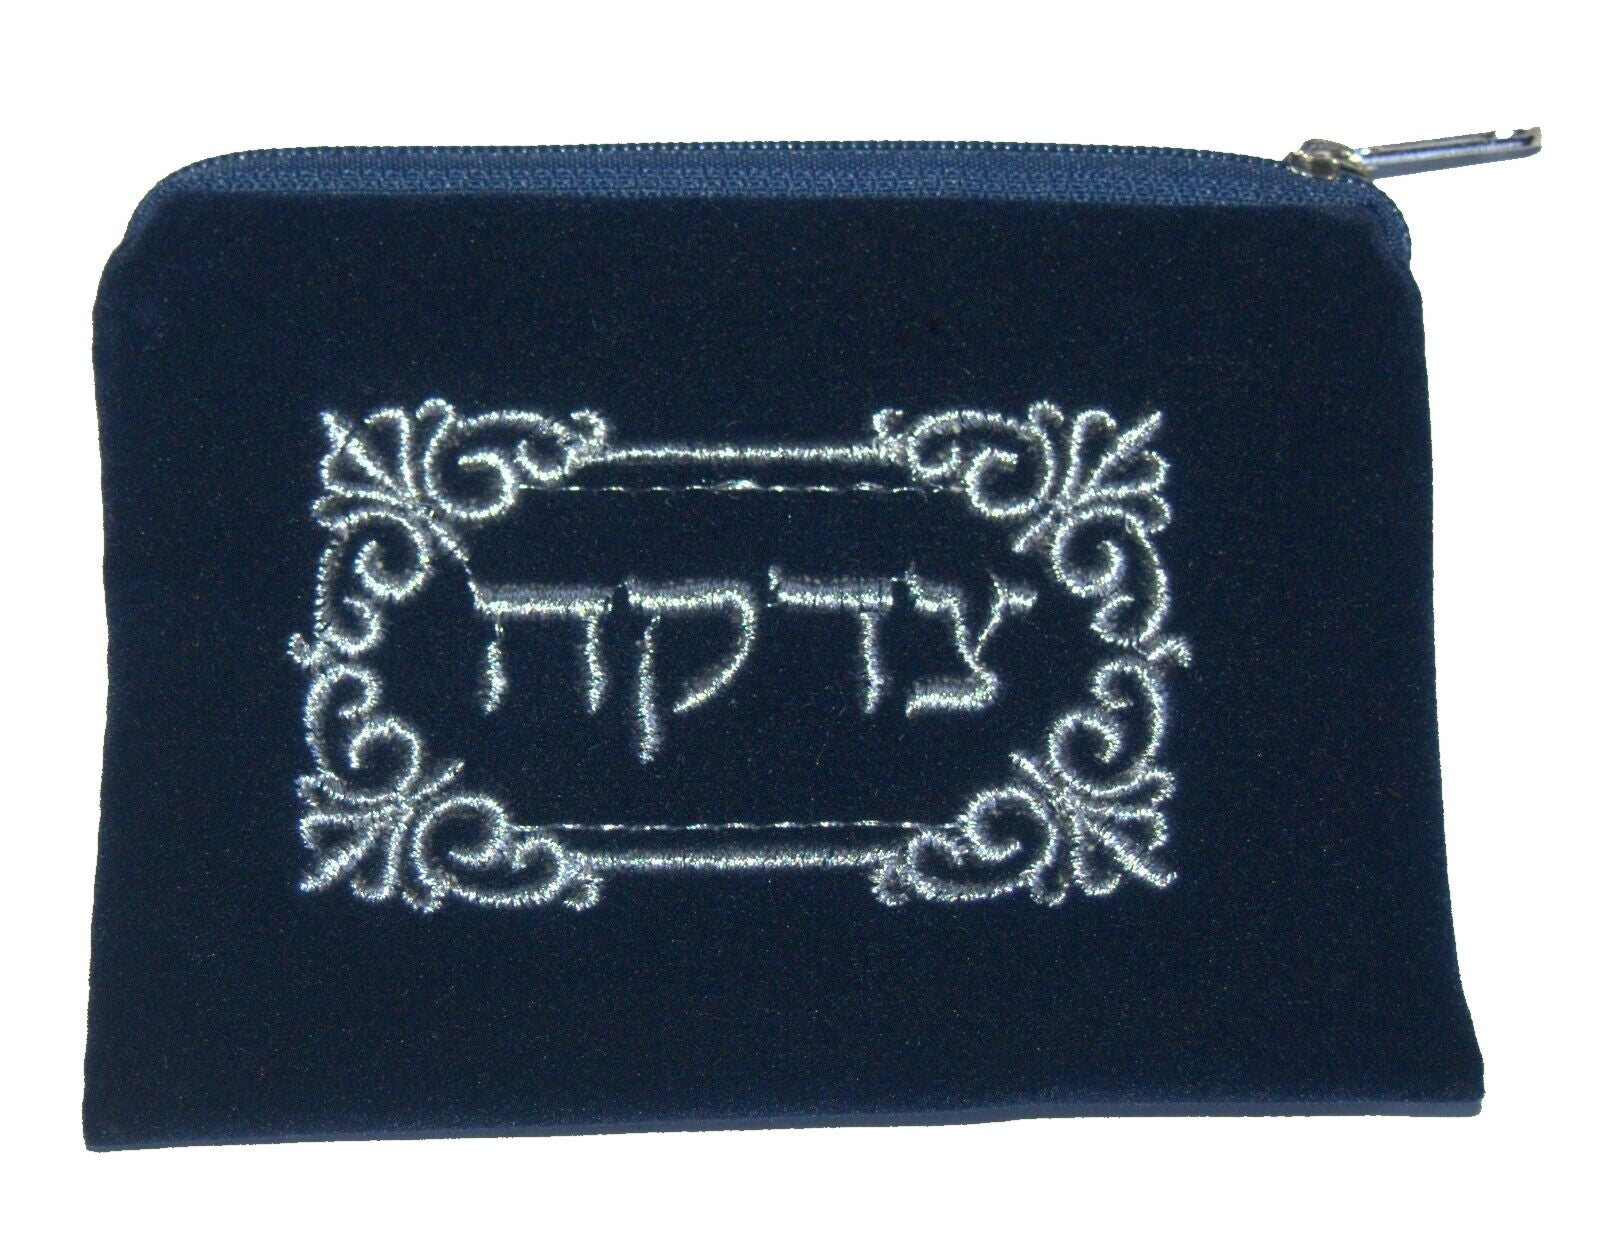 Judaica Tzedakah Tzdakah Charity Velvet Pouch Pocket Wallet Silver Embroidery